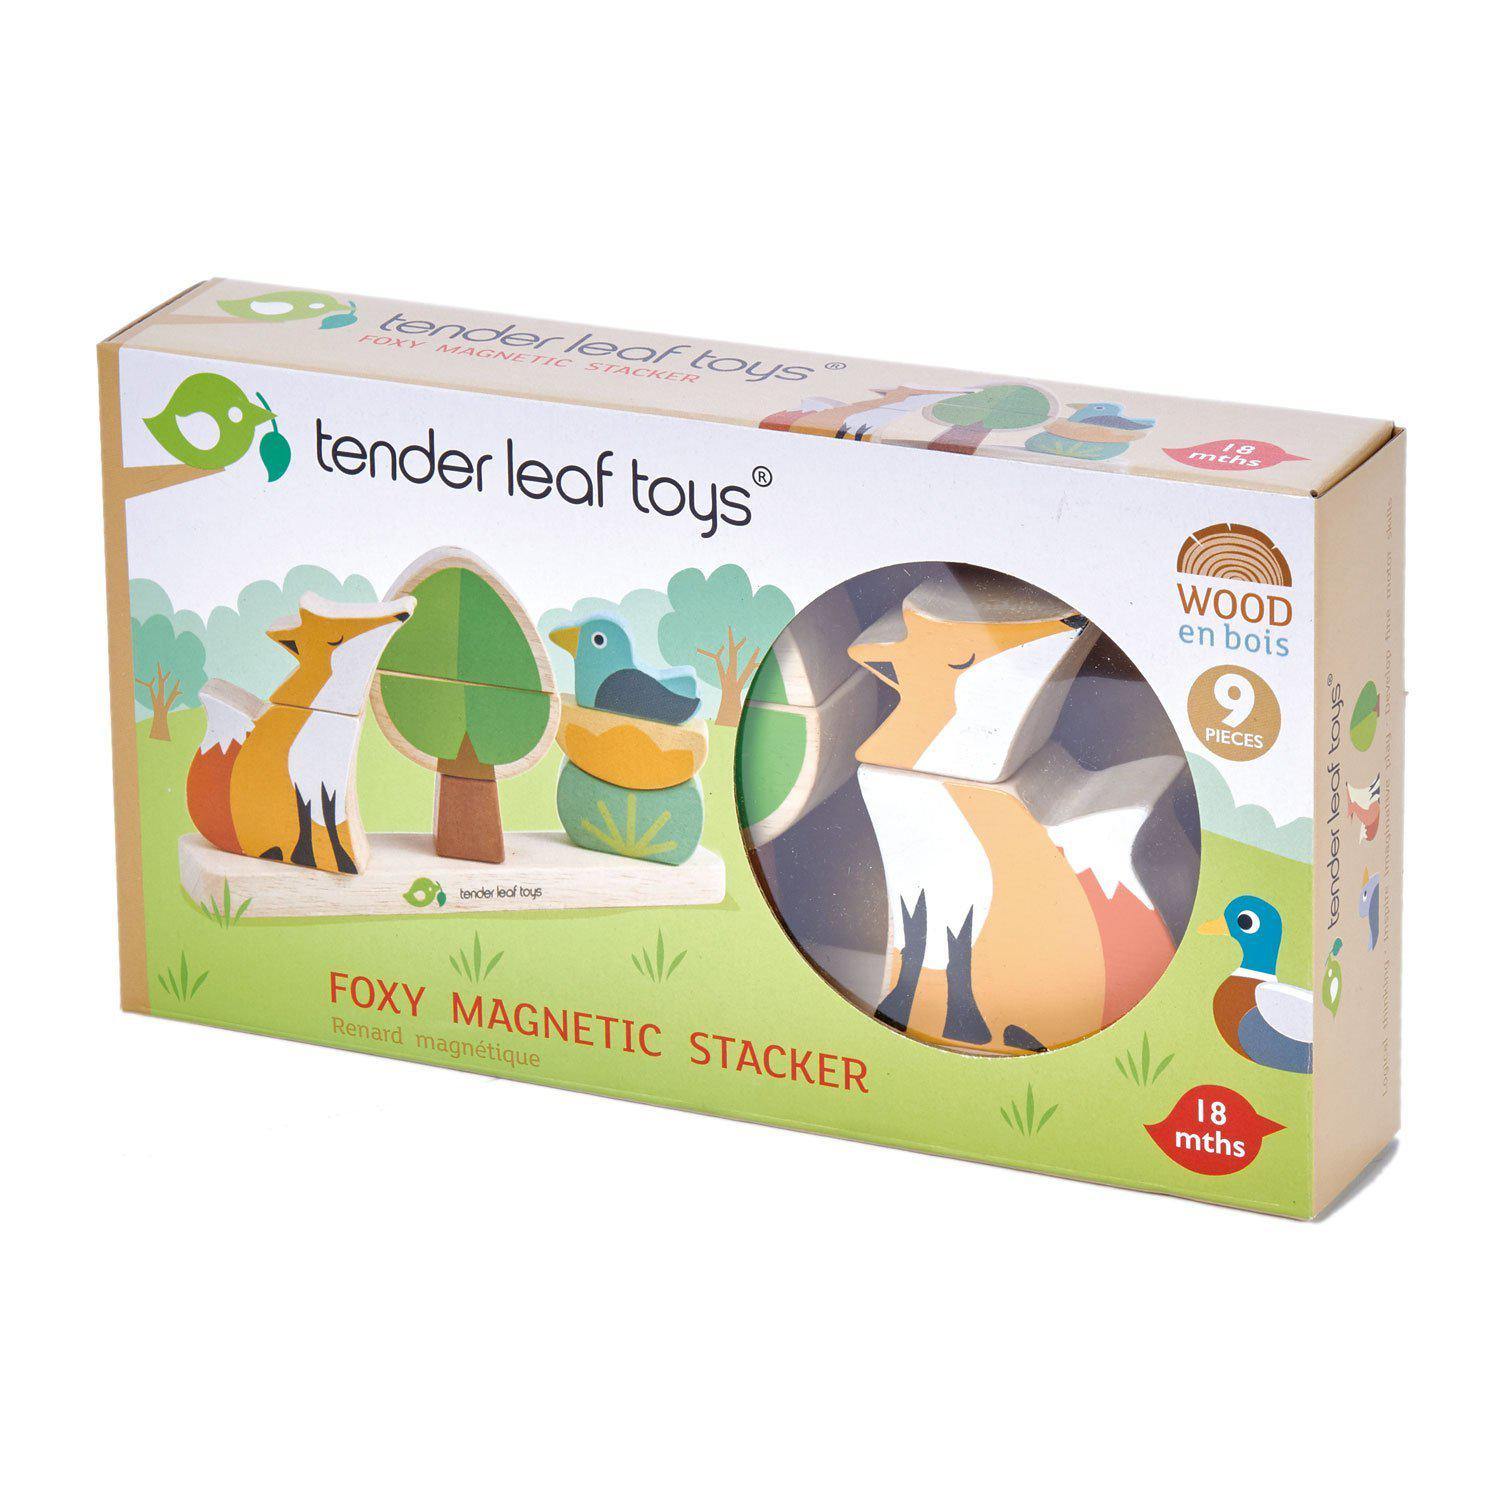 Erdei róka mágneses oktató puzzle, prémium minőségű fából - Foxy Magnetic Stacker - 8 darab - Tender Leaf Toys-Tender Leaf Toys-1-Játszma.ro - A maradandó élmények boltja